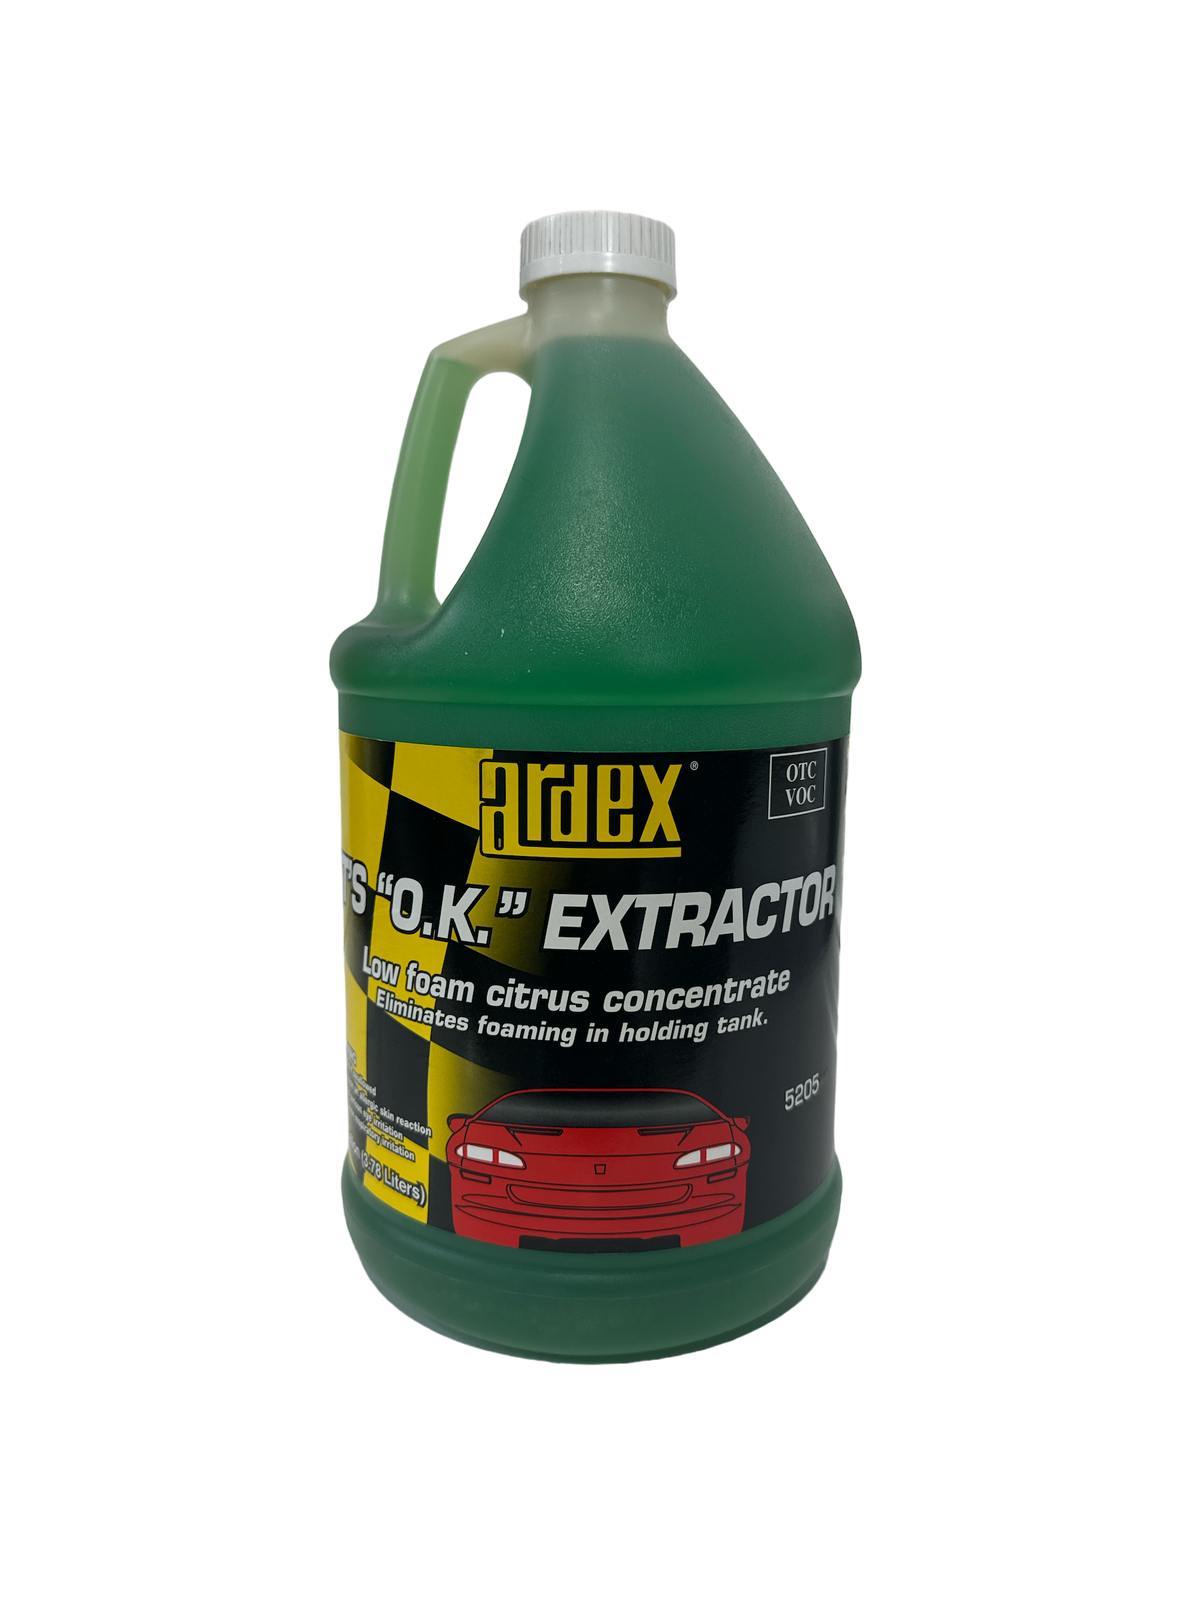 Ardex It's "OK" Extractor